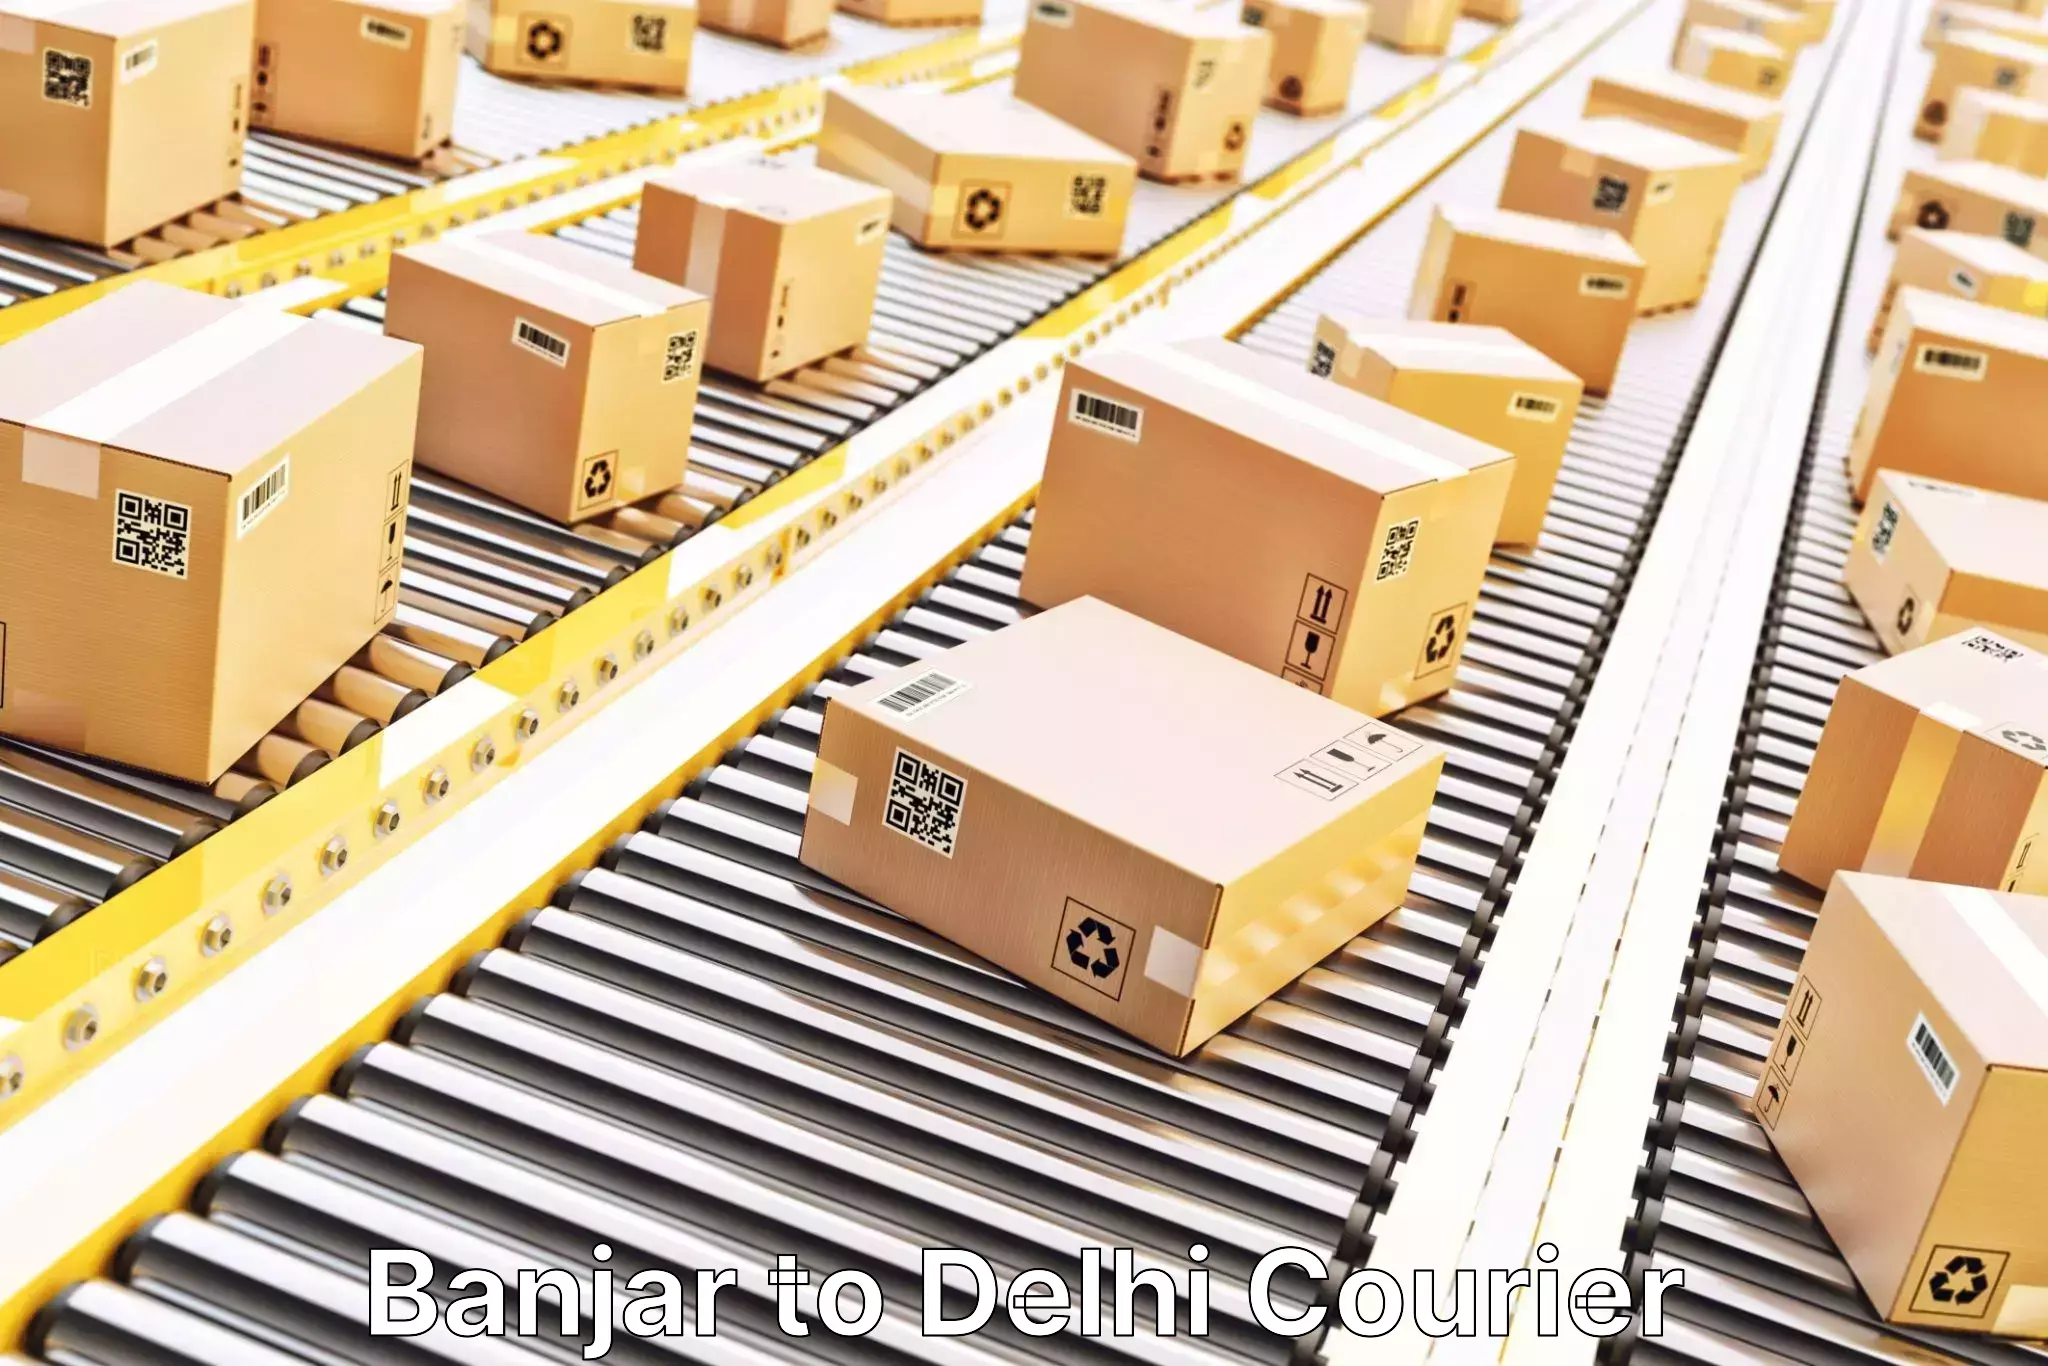 Cargo delivery service Banjar to Delhi